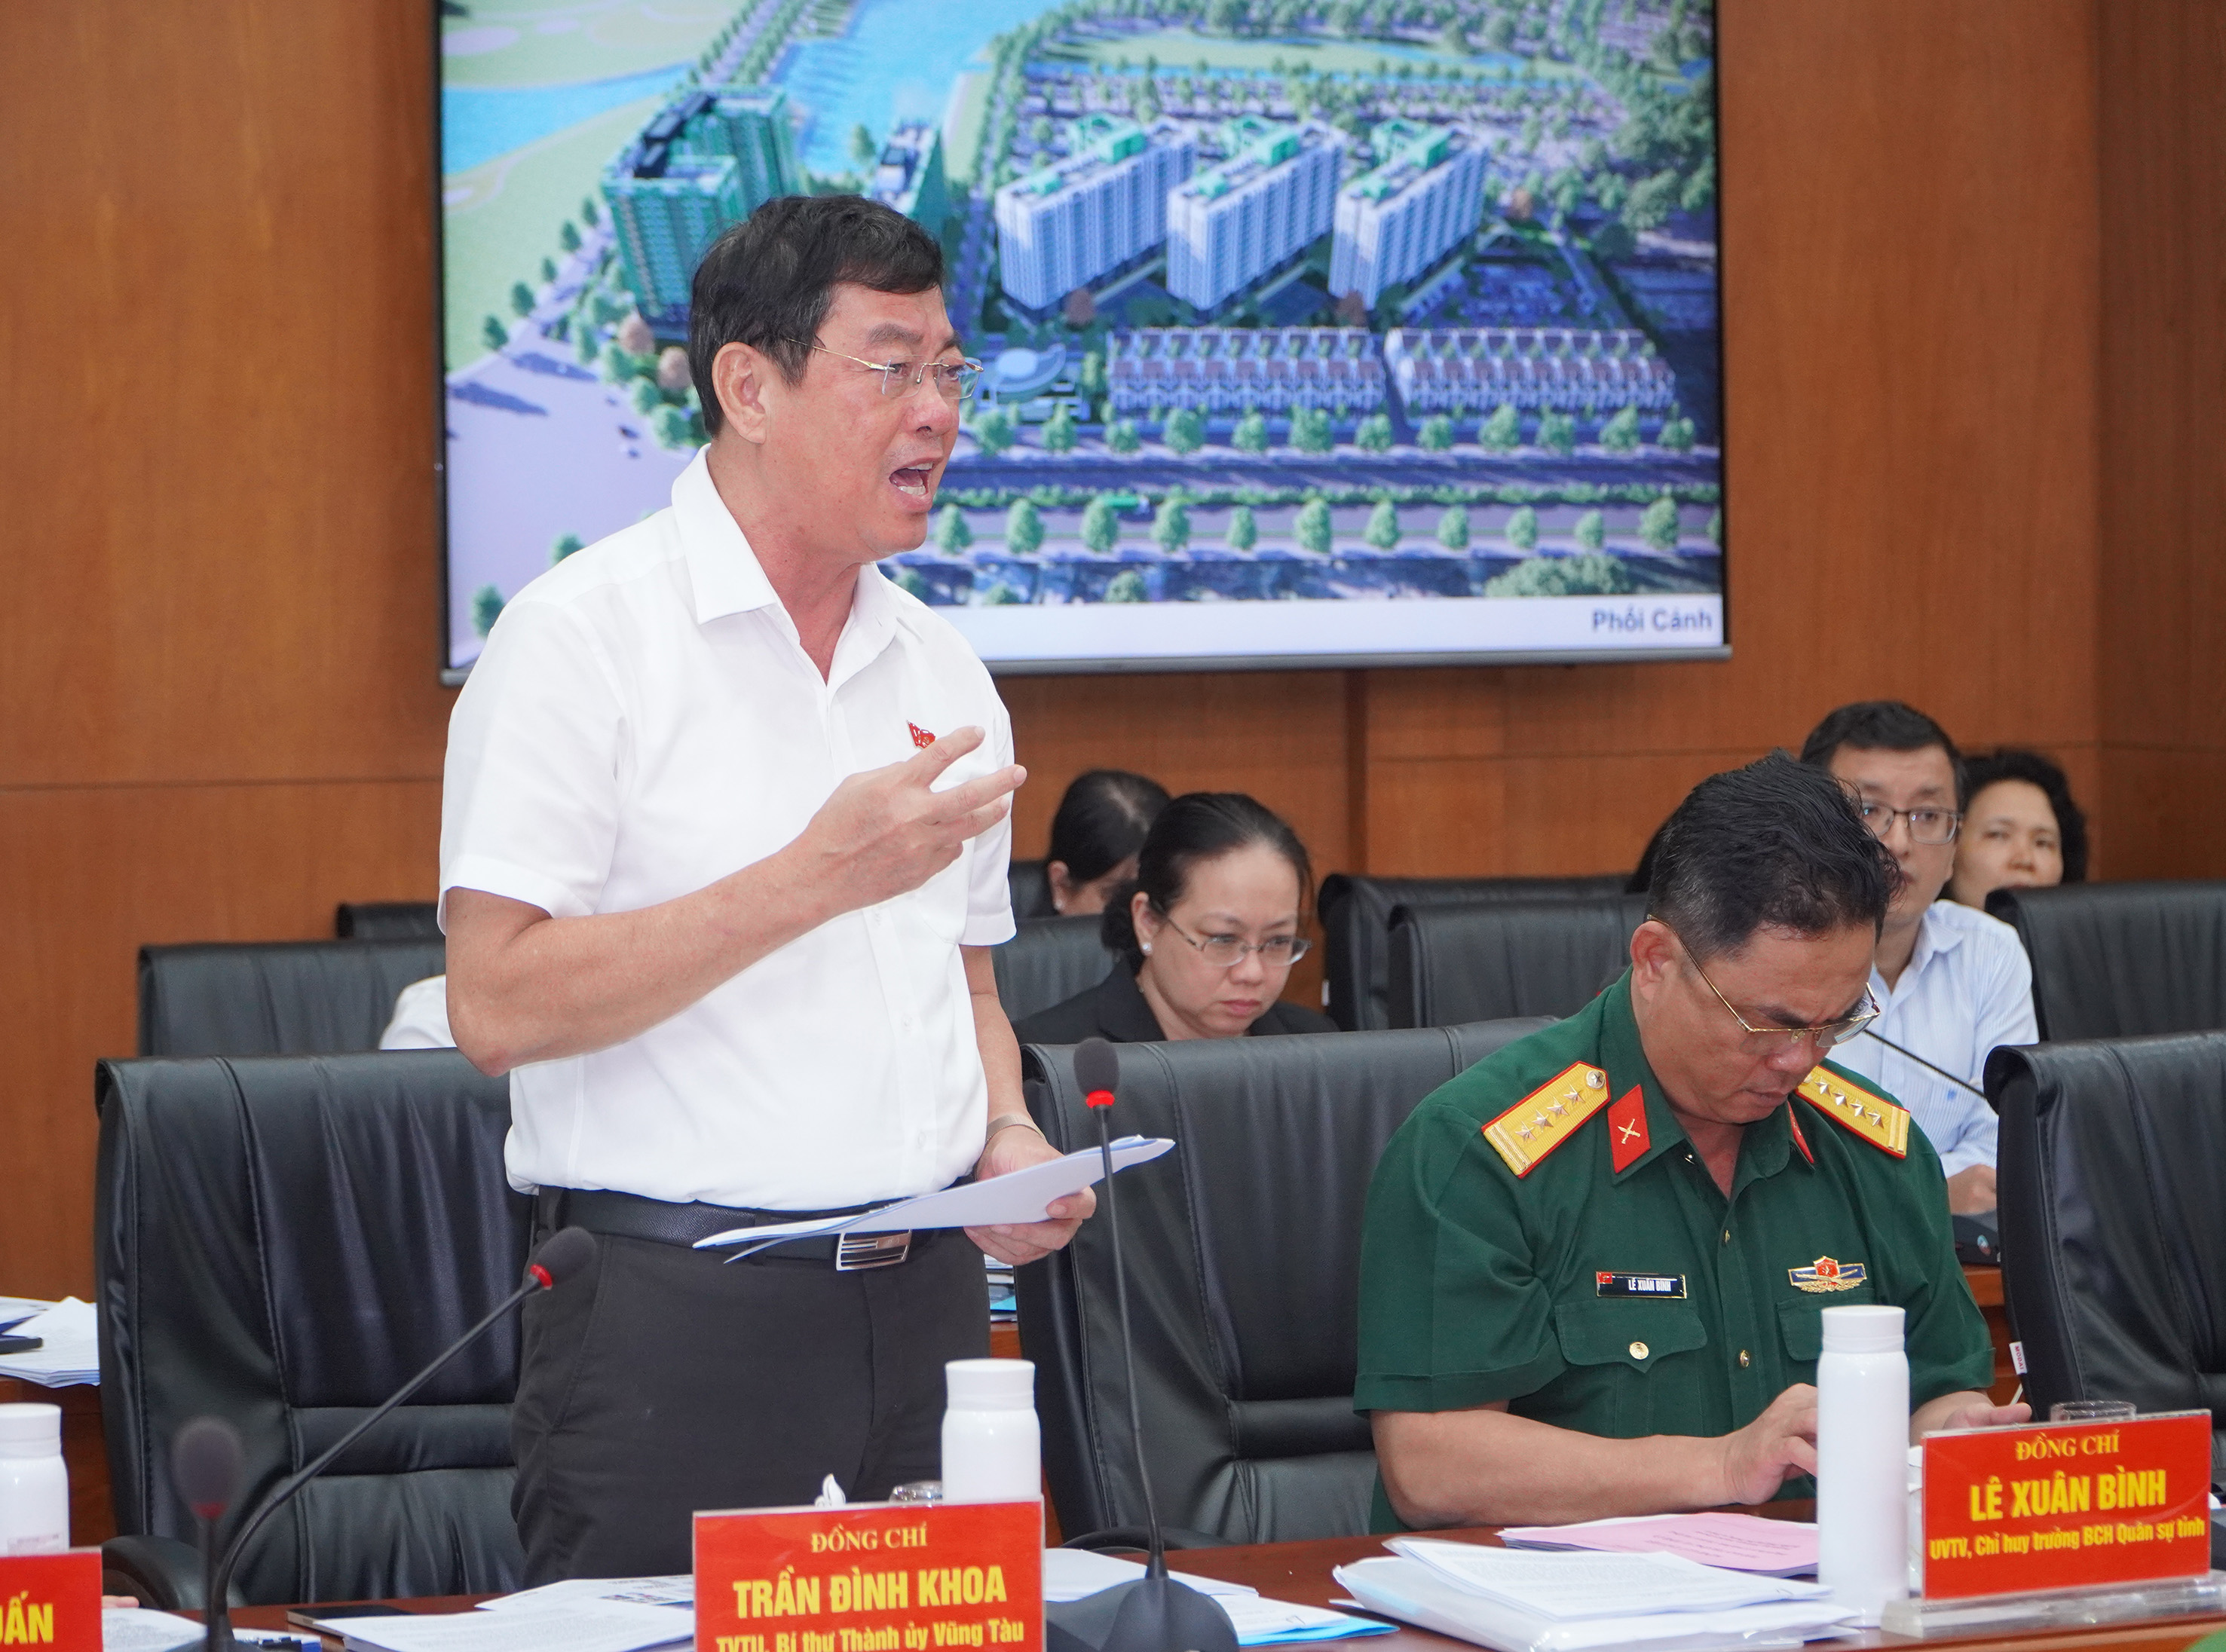 Bí thư Thành ủy Vũng Tàu Trần Đình Khoa phát biểu về một số dự án nhà ở xã hội tại địa phương.